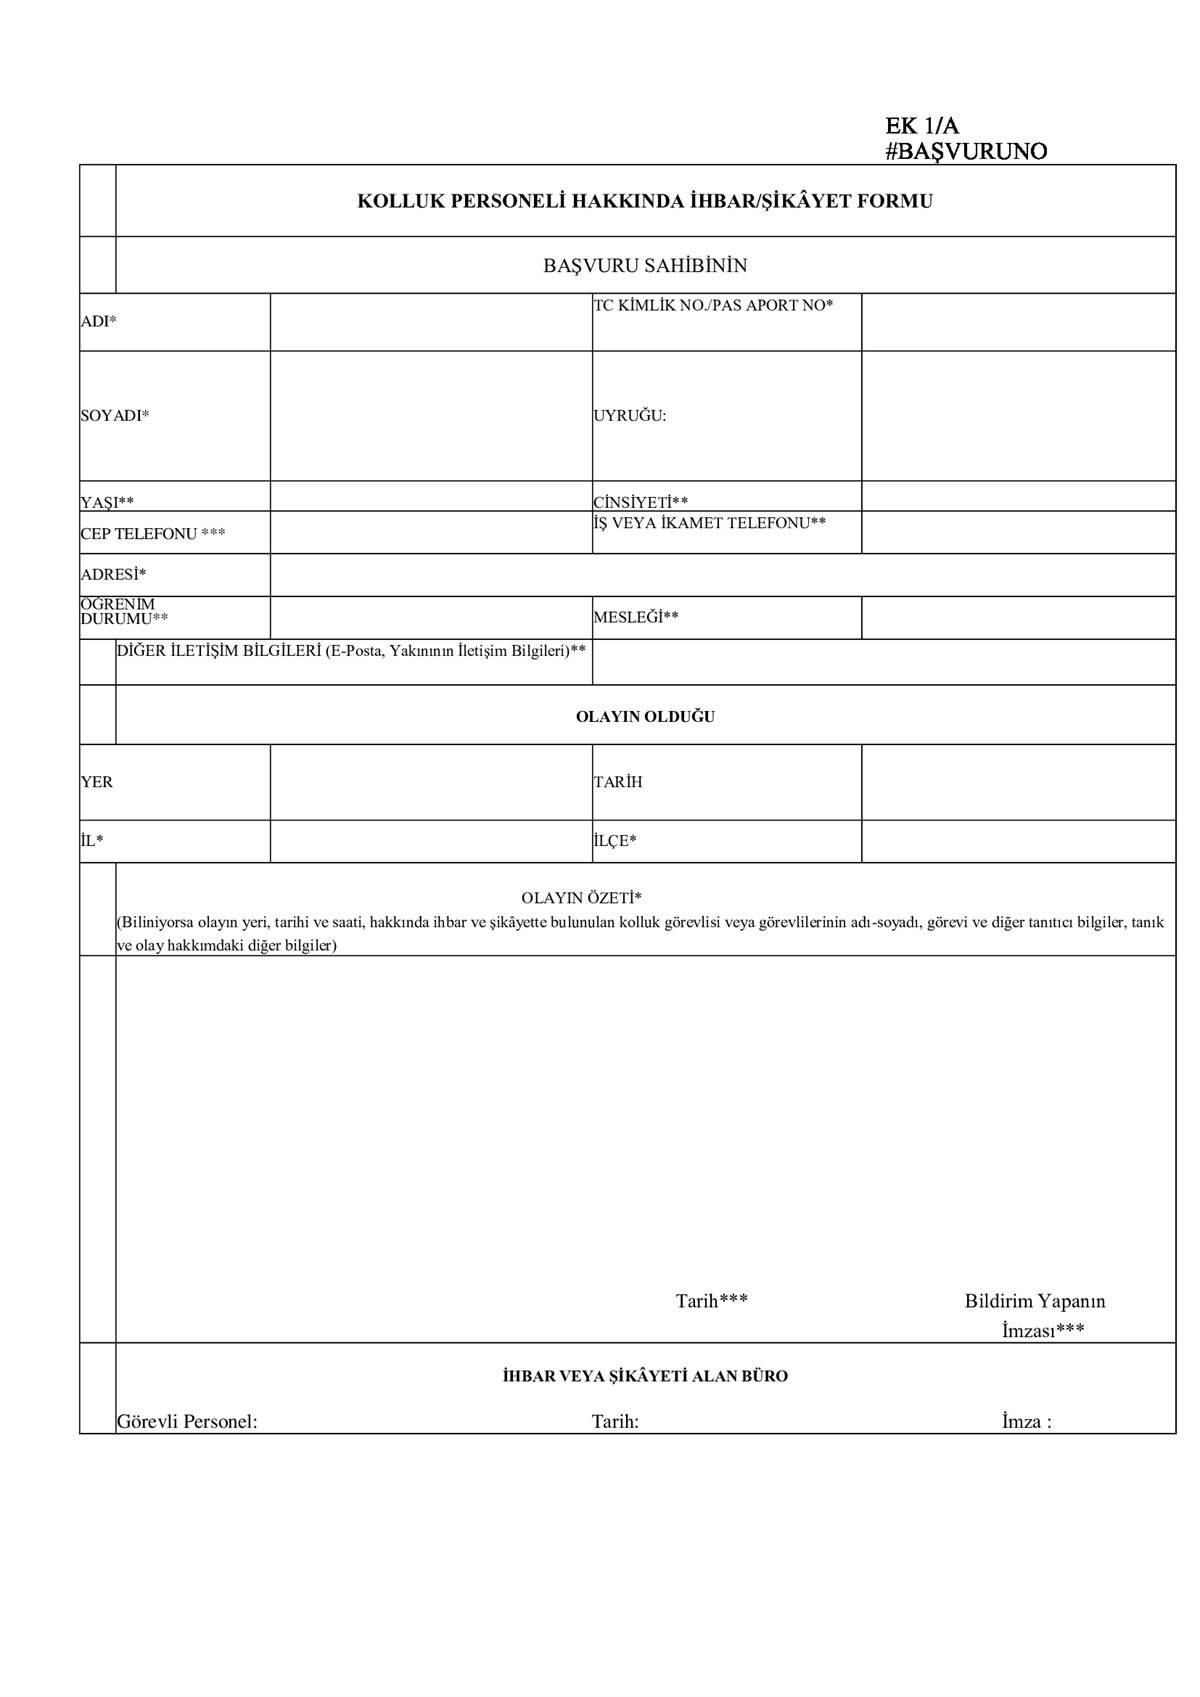 Kolluk Personeli Hakkında İhbar/Şikayet Formu 